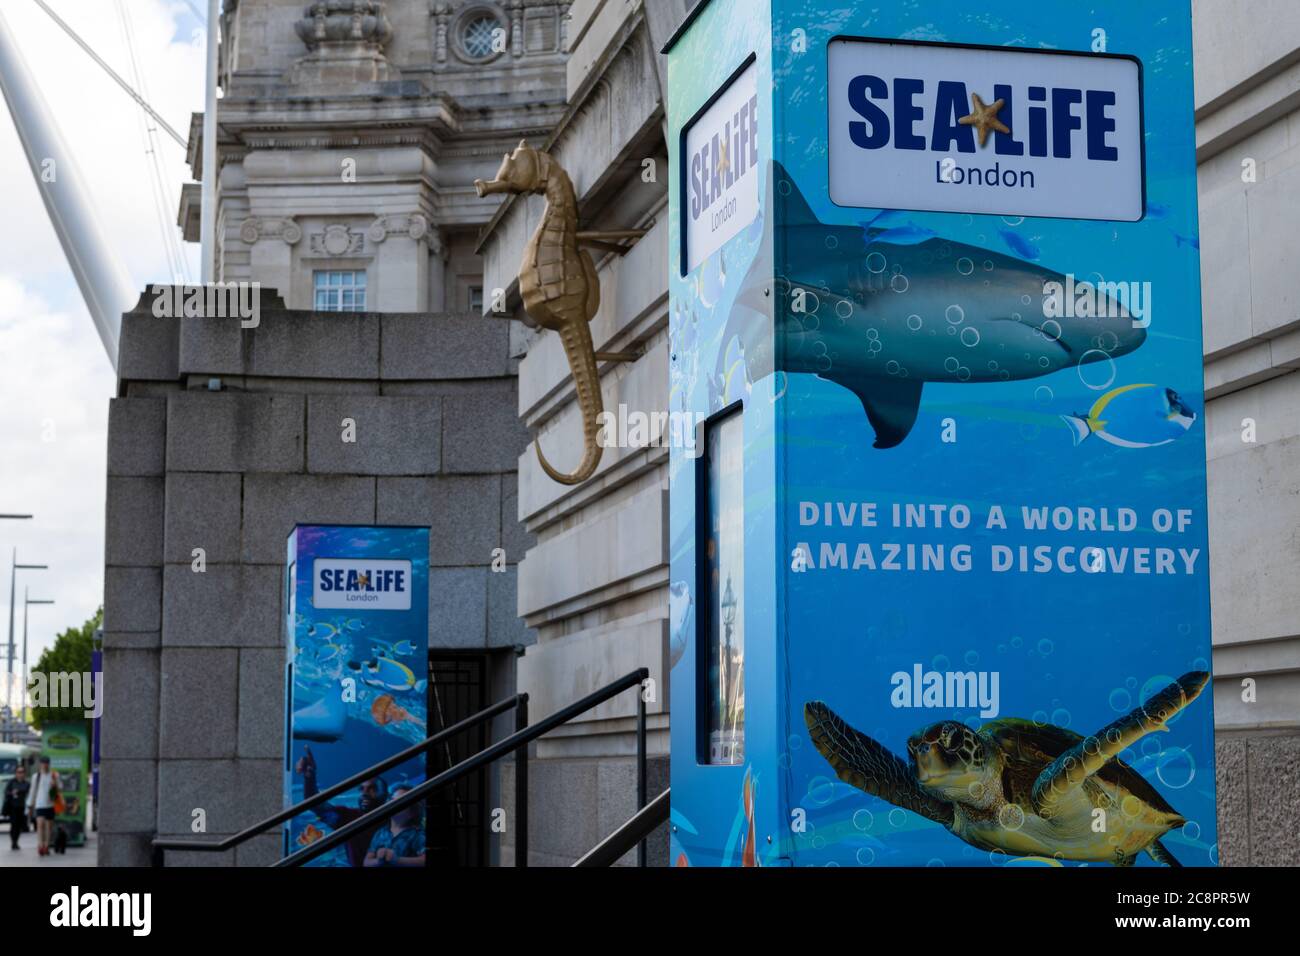 Le Sea Life London Aquarium est situé dans le County Hall, sur la rive sud de la Tamise. Banque D'Images